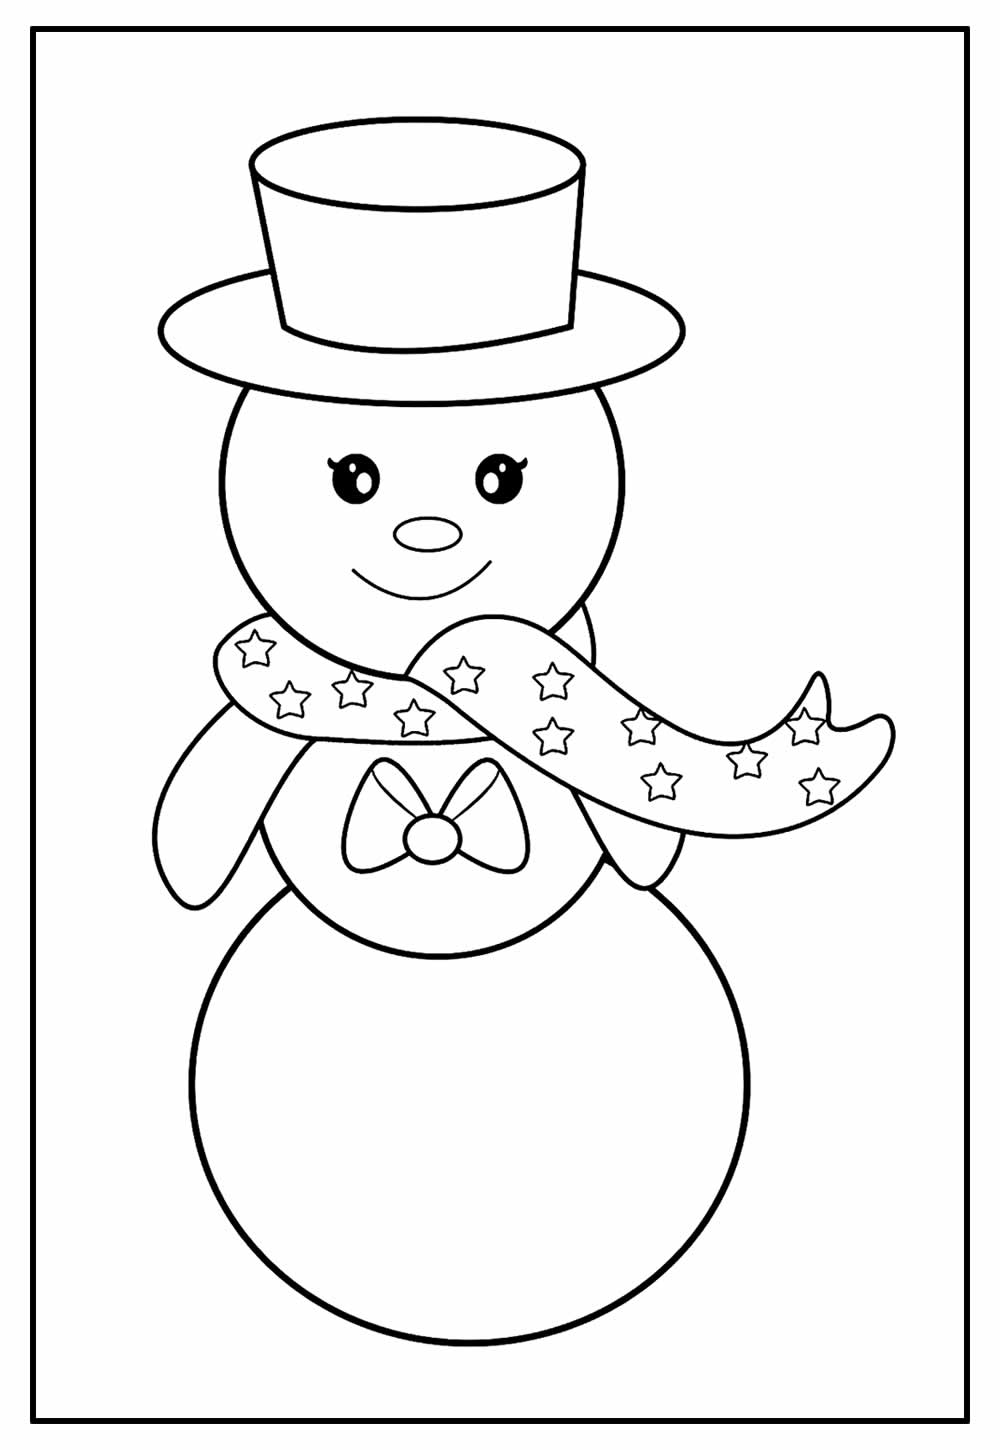 Desenhos de Bonecos de Neve para Imprimir e Colorir